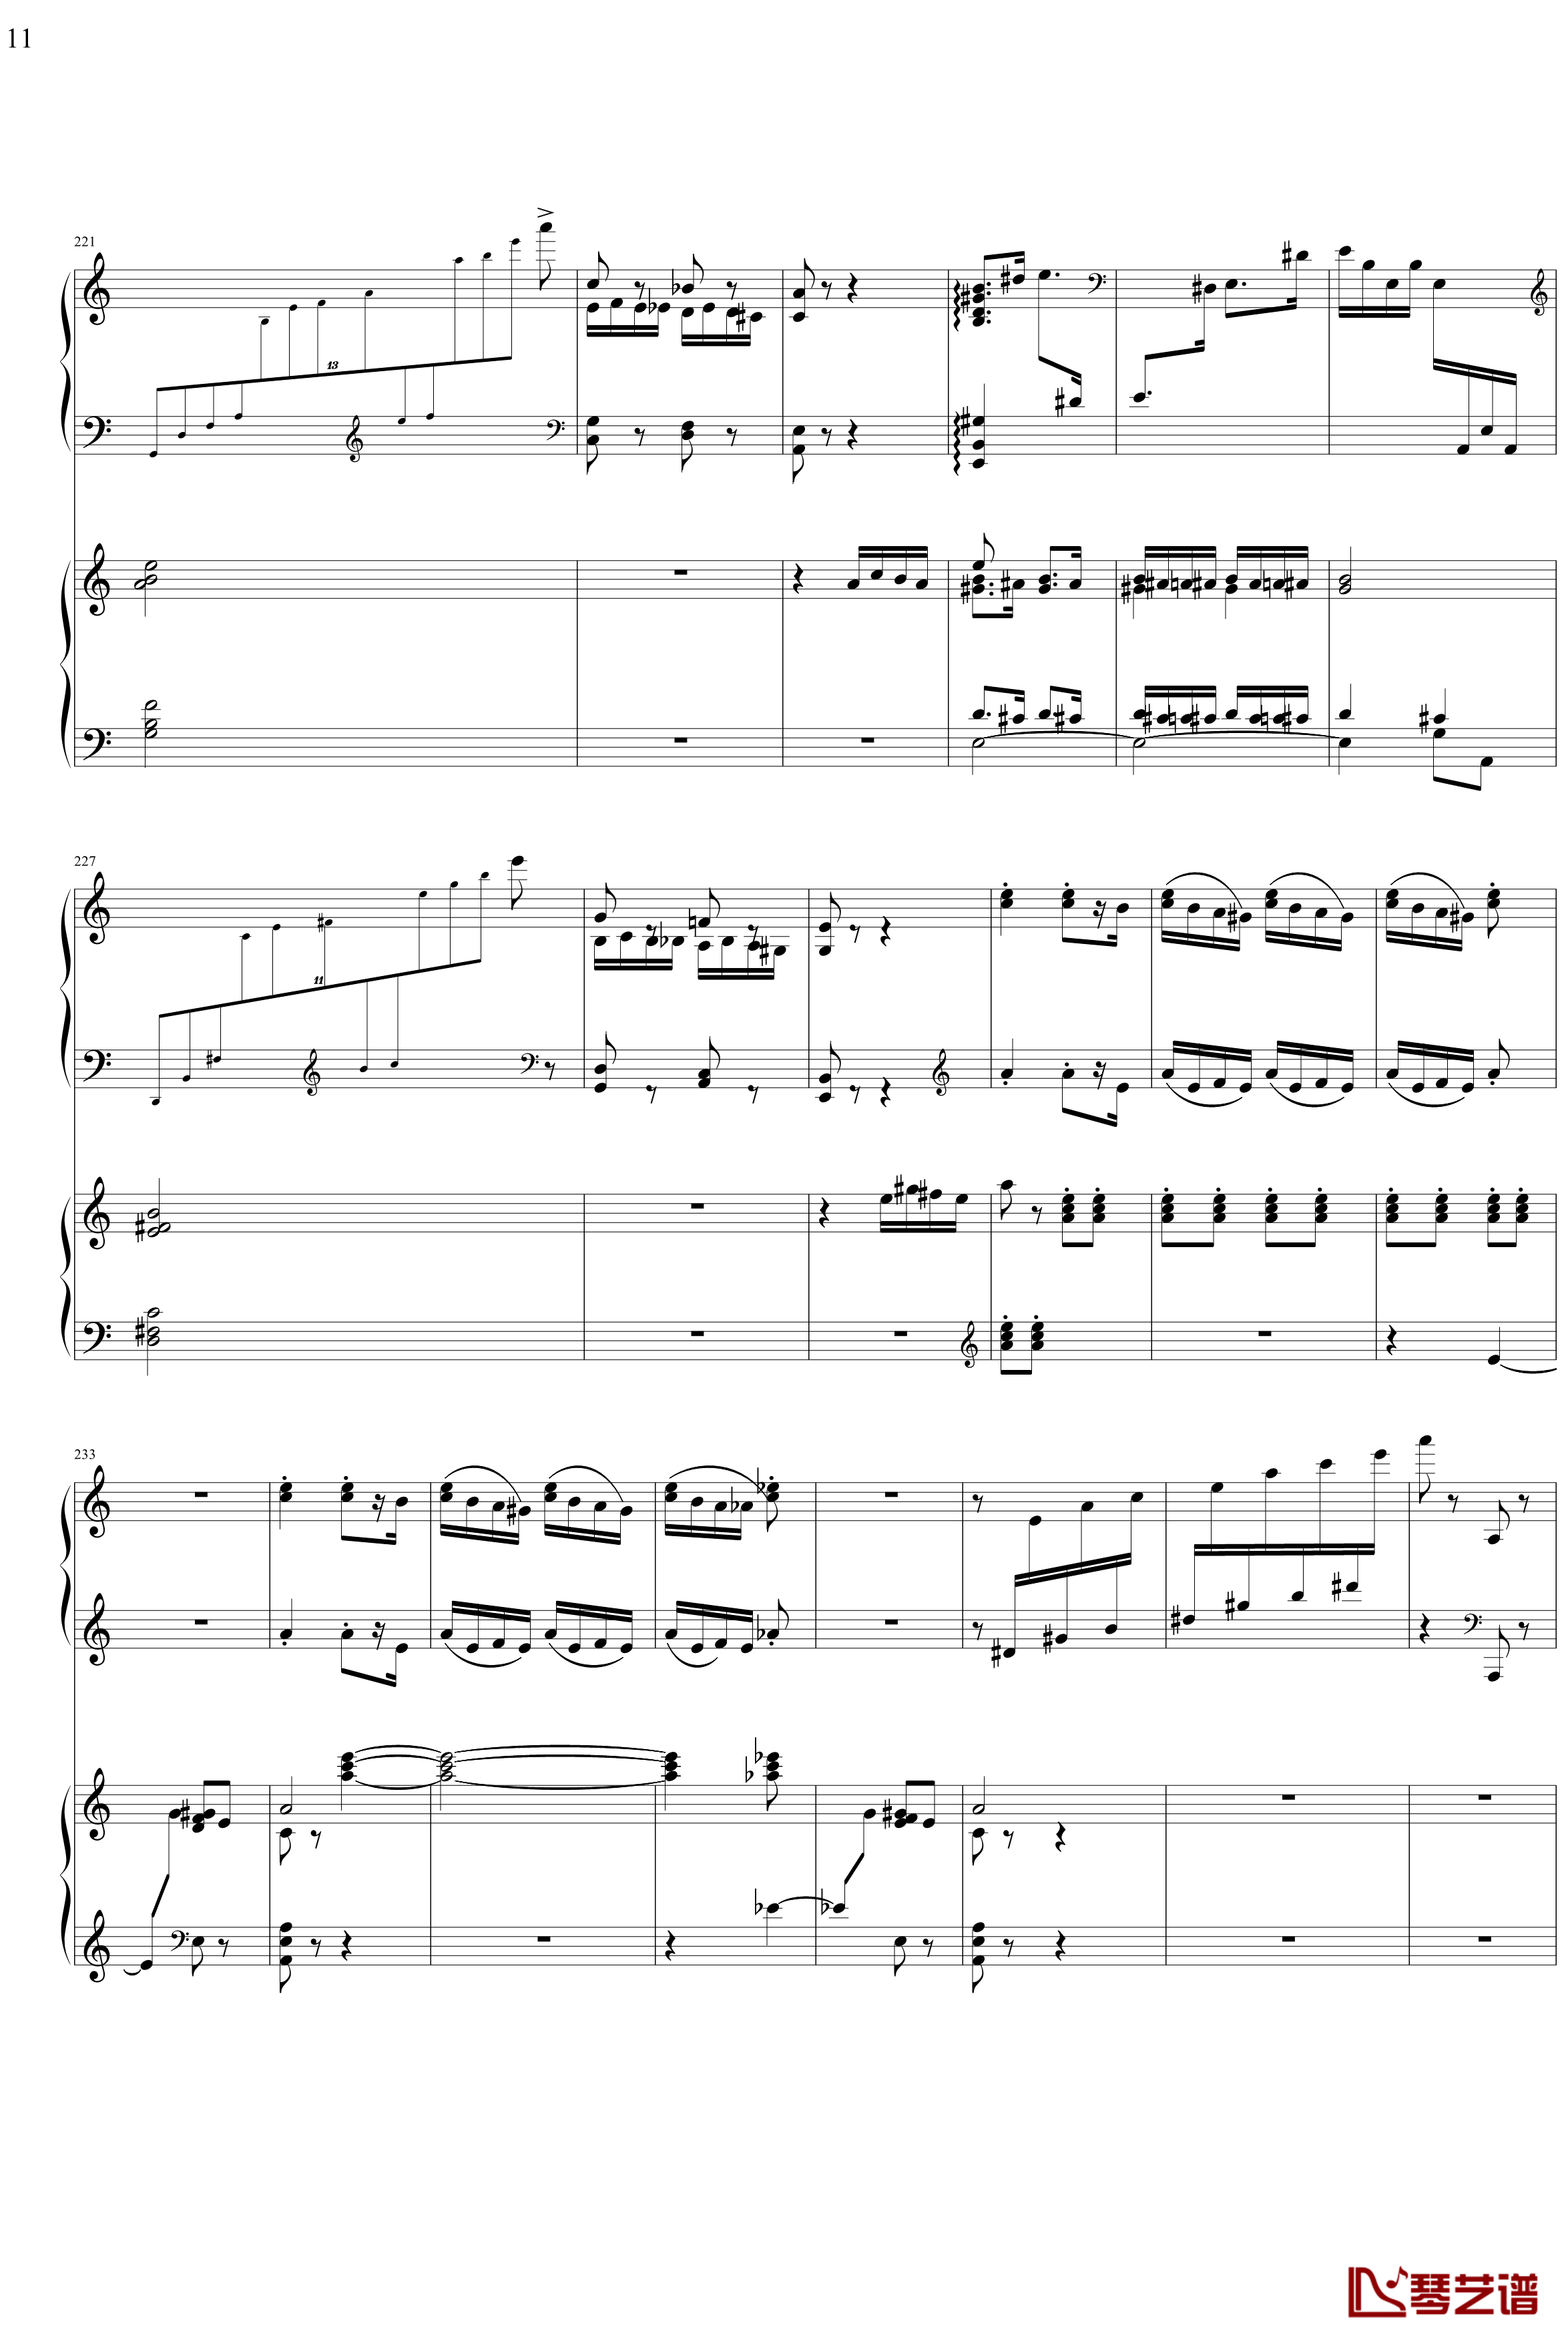 帕格尼主题狂想曲钢琴谱-1~10变奏-拉赫马尼若夫11